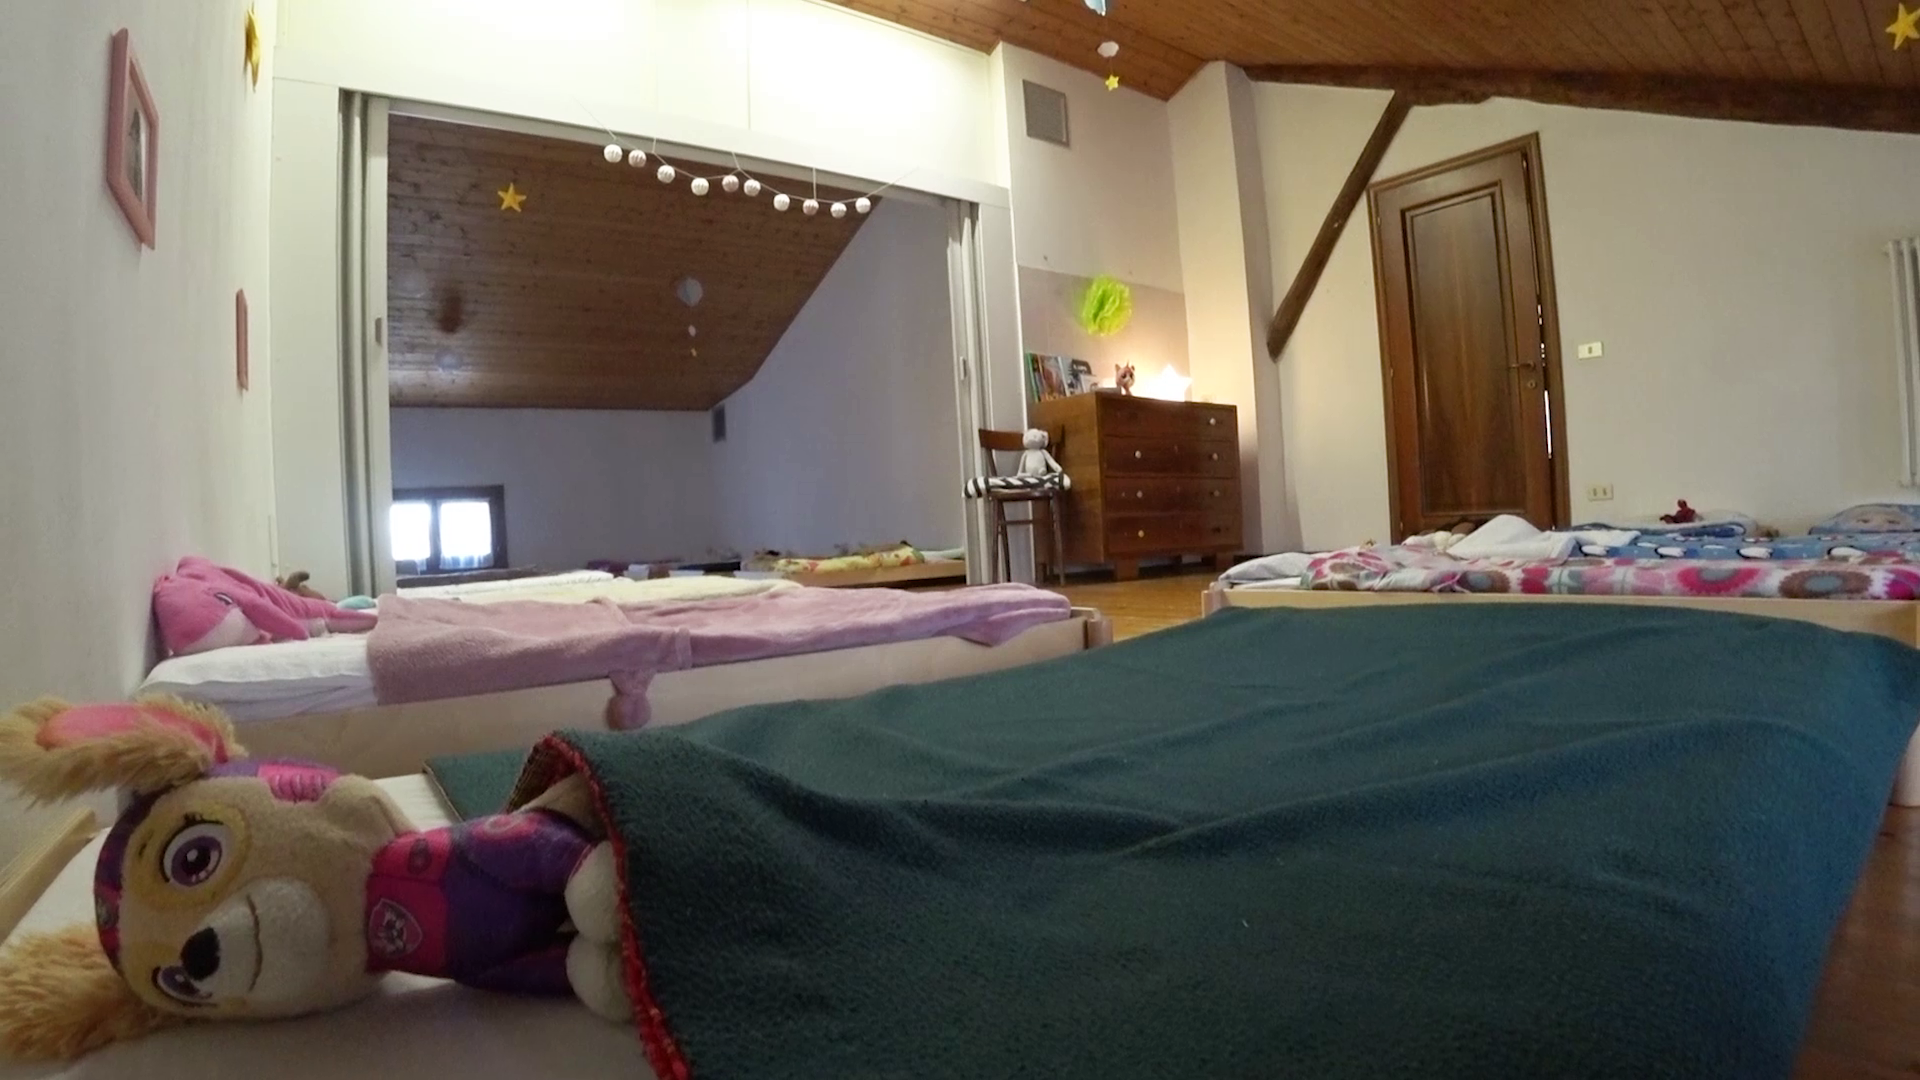 asilo nido e scuola dell'infanzia a Malo: intervento con vmc Helty - dormitorio